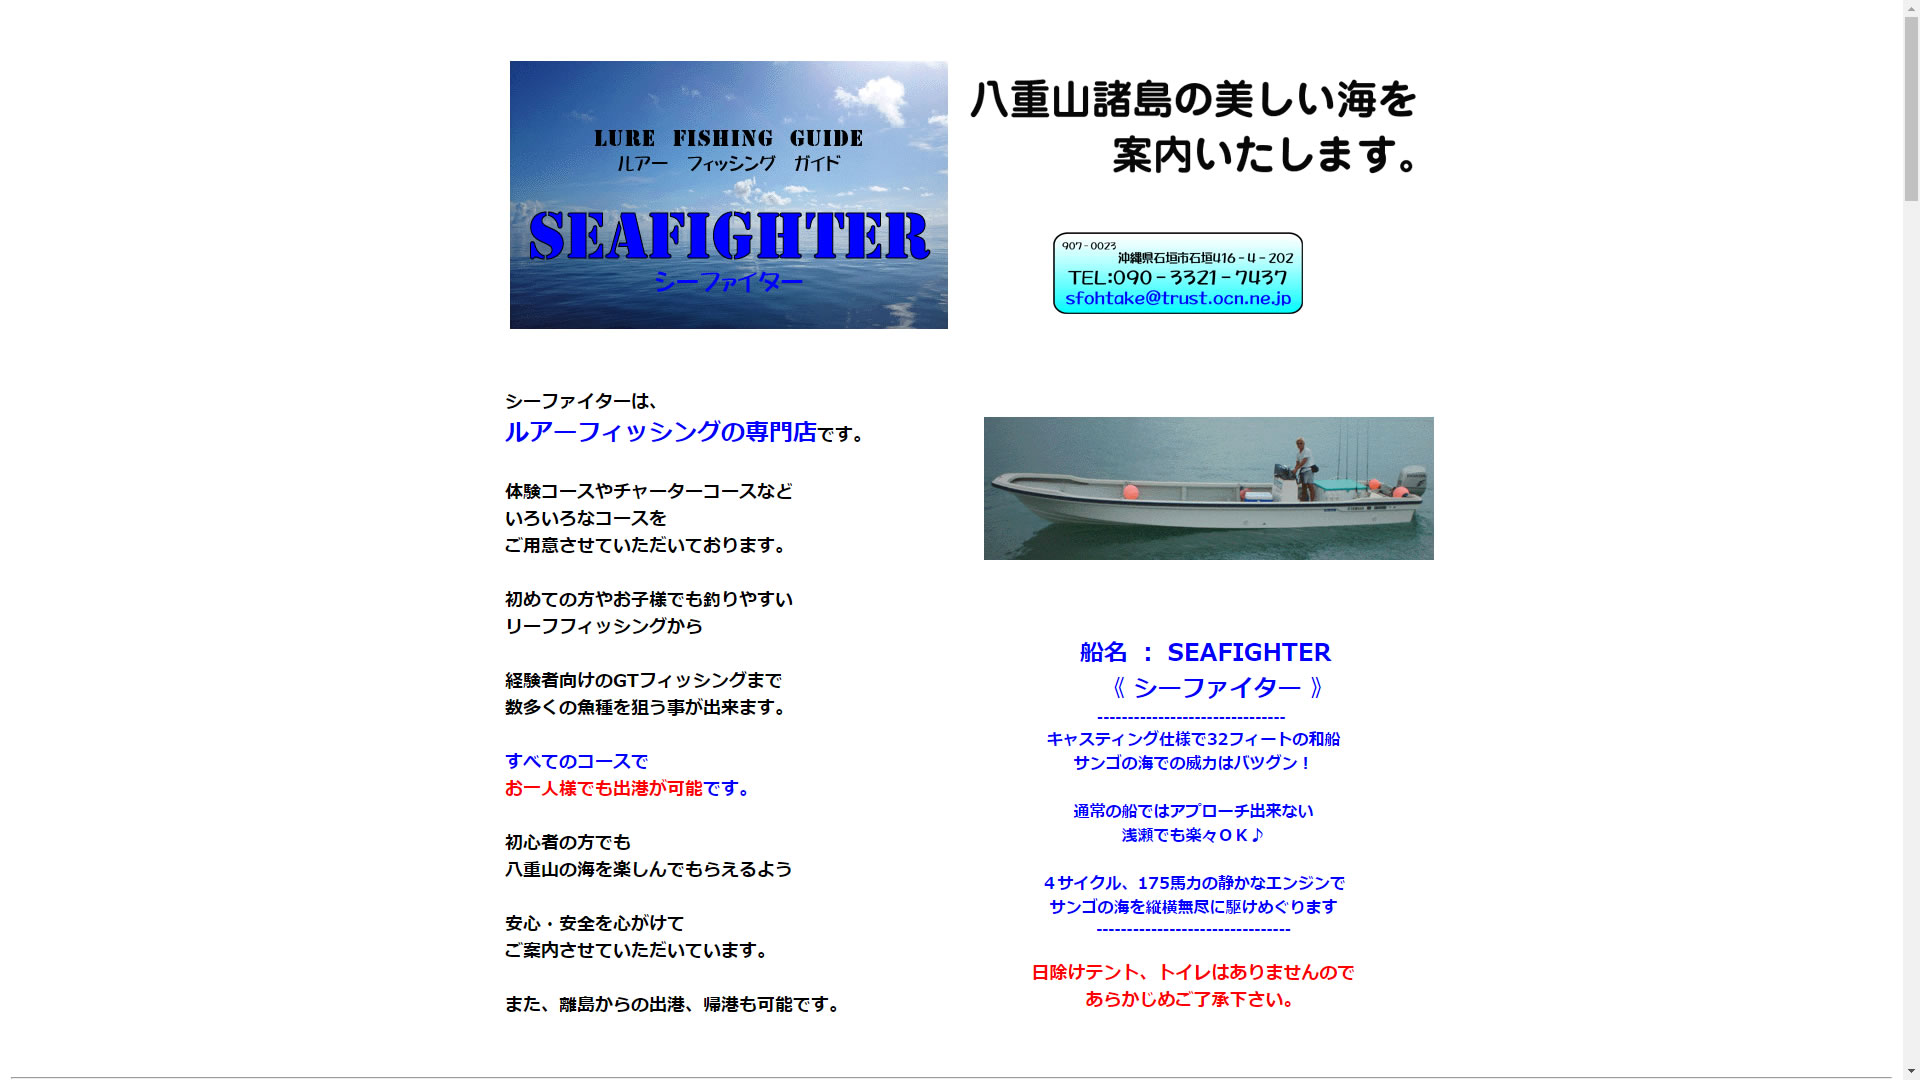 石垣島 釣り 釣り船 シーファイター 沖縄情報webサイト ちゅらなび Com